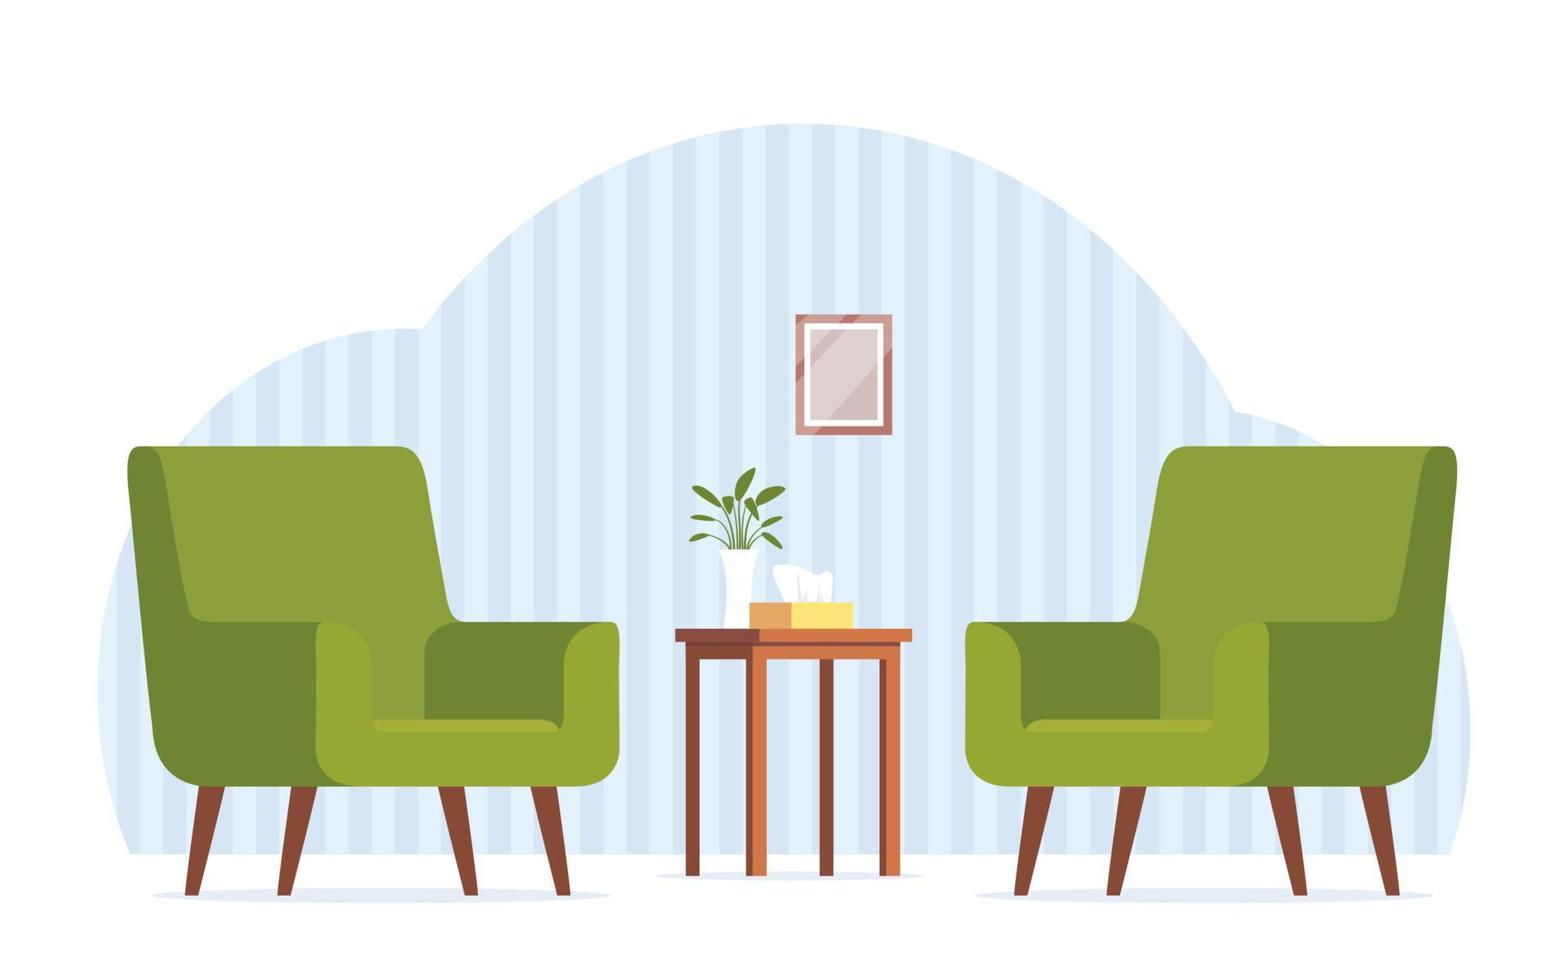 twee groen fauteuils tegenover elk ander. fauteuils voor psychologisch overleg. tafel, doos van servetten, bloemen. comfortabel interieur, kantoor voor psychotherapeutisch consultaties. vector